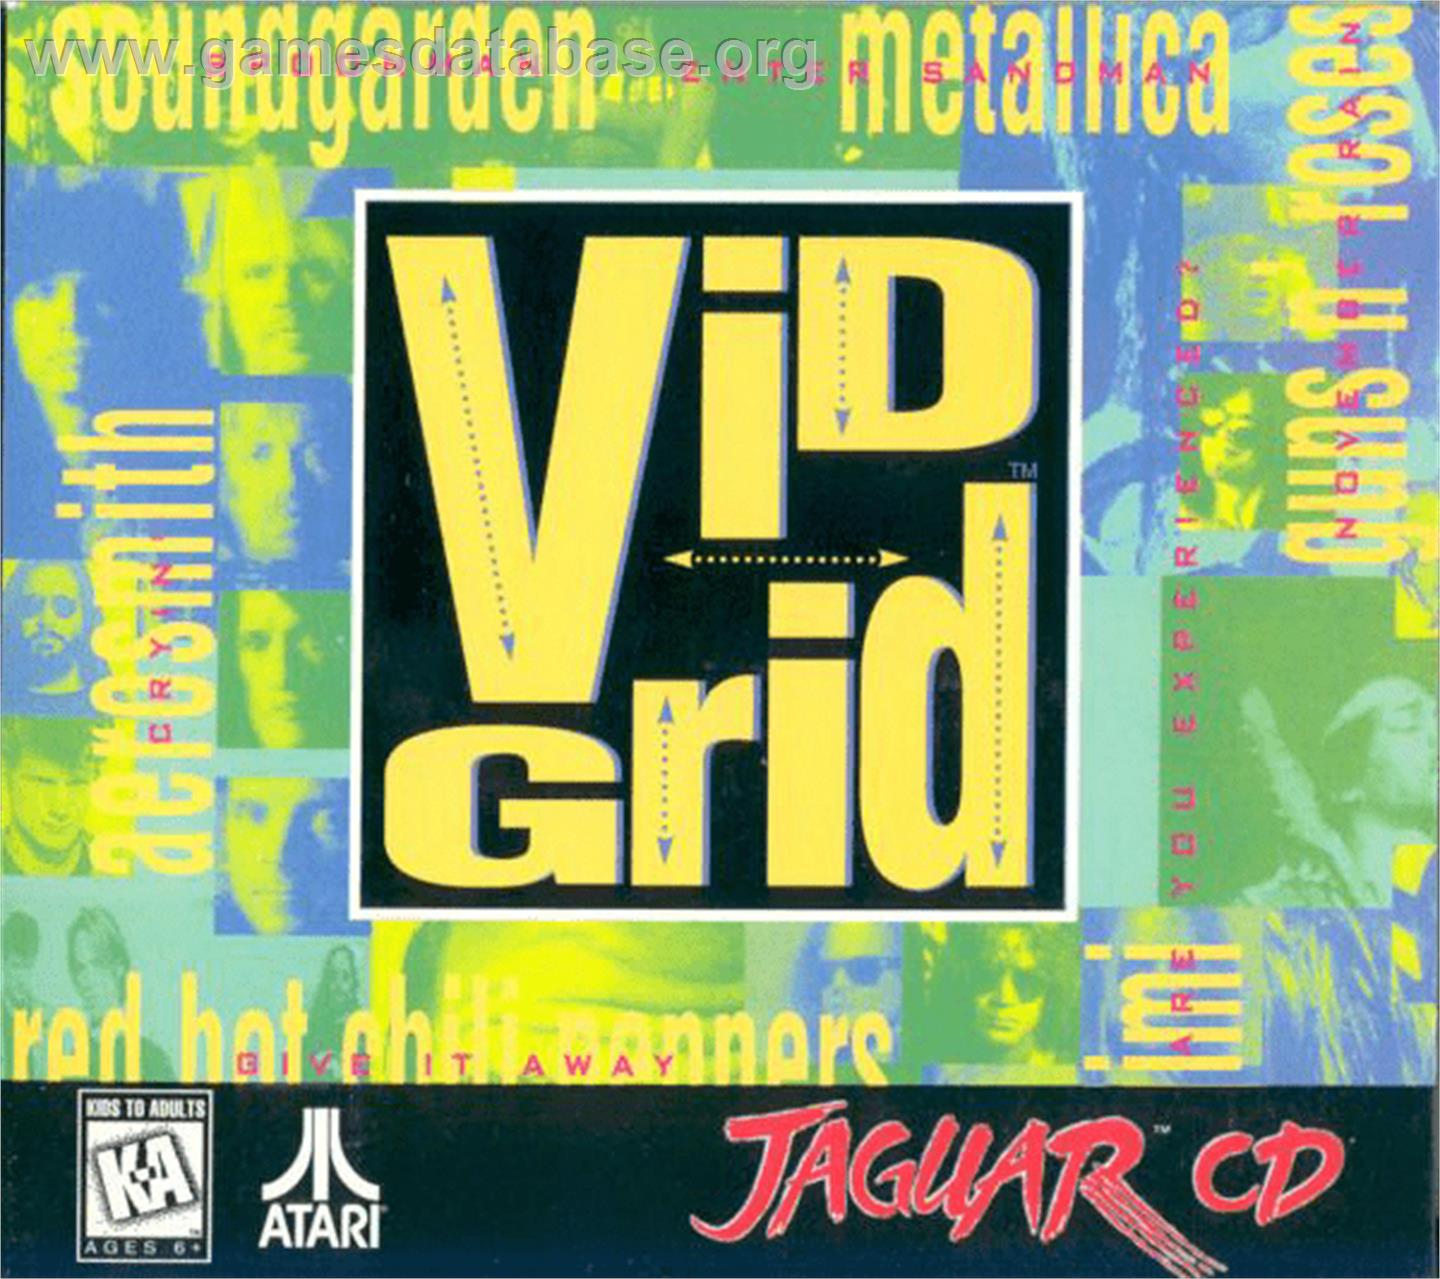 Vid Grid - Atari Jaguar CD - Artwork - Box